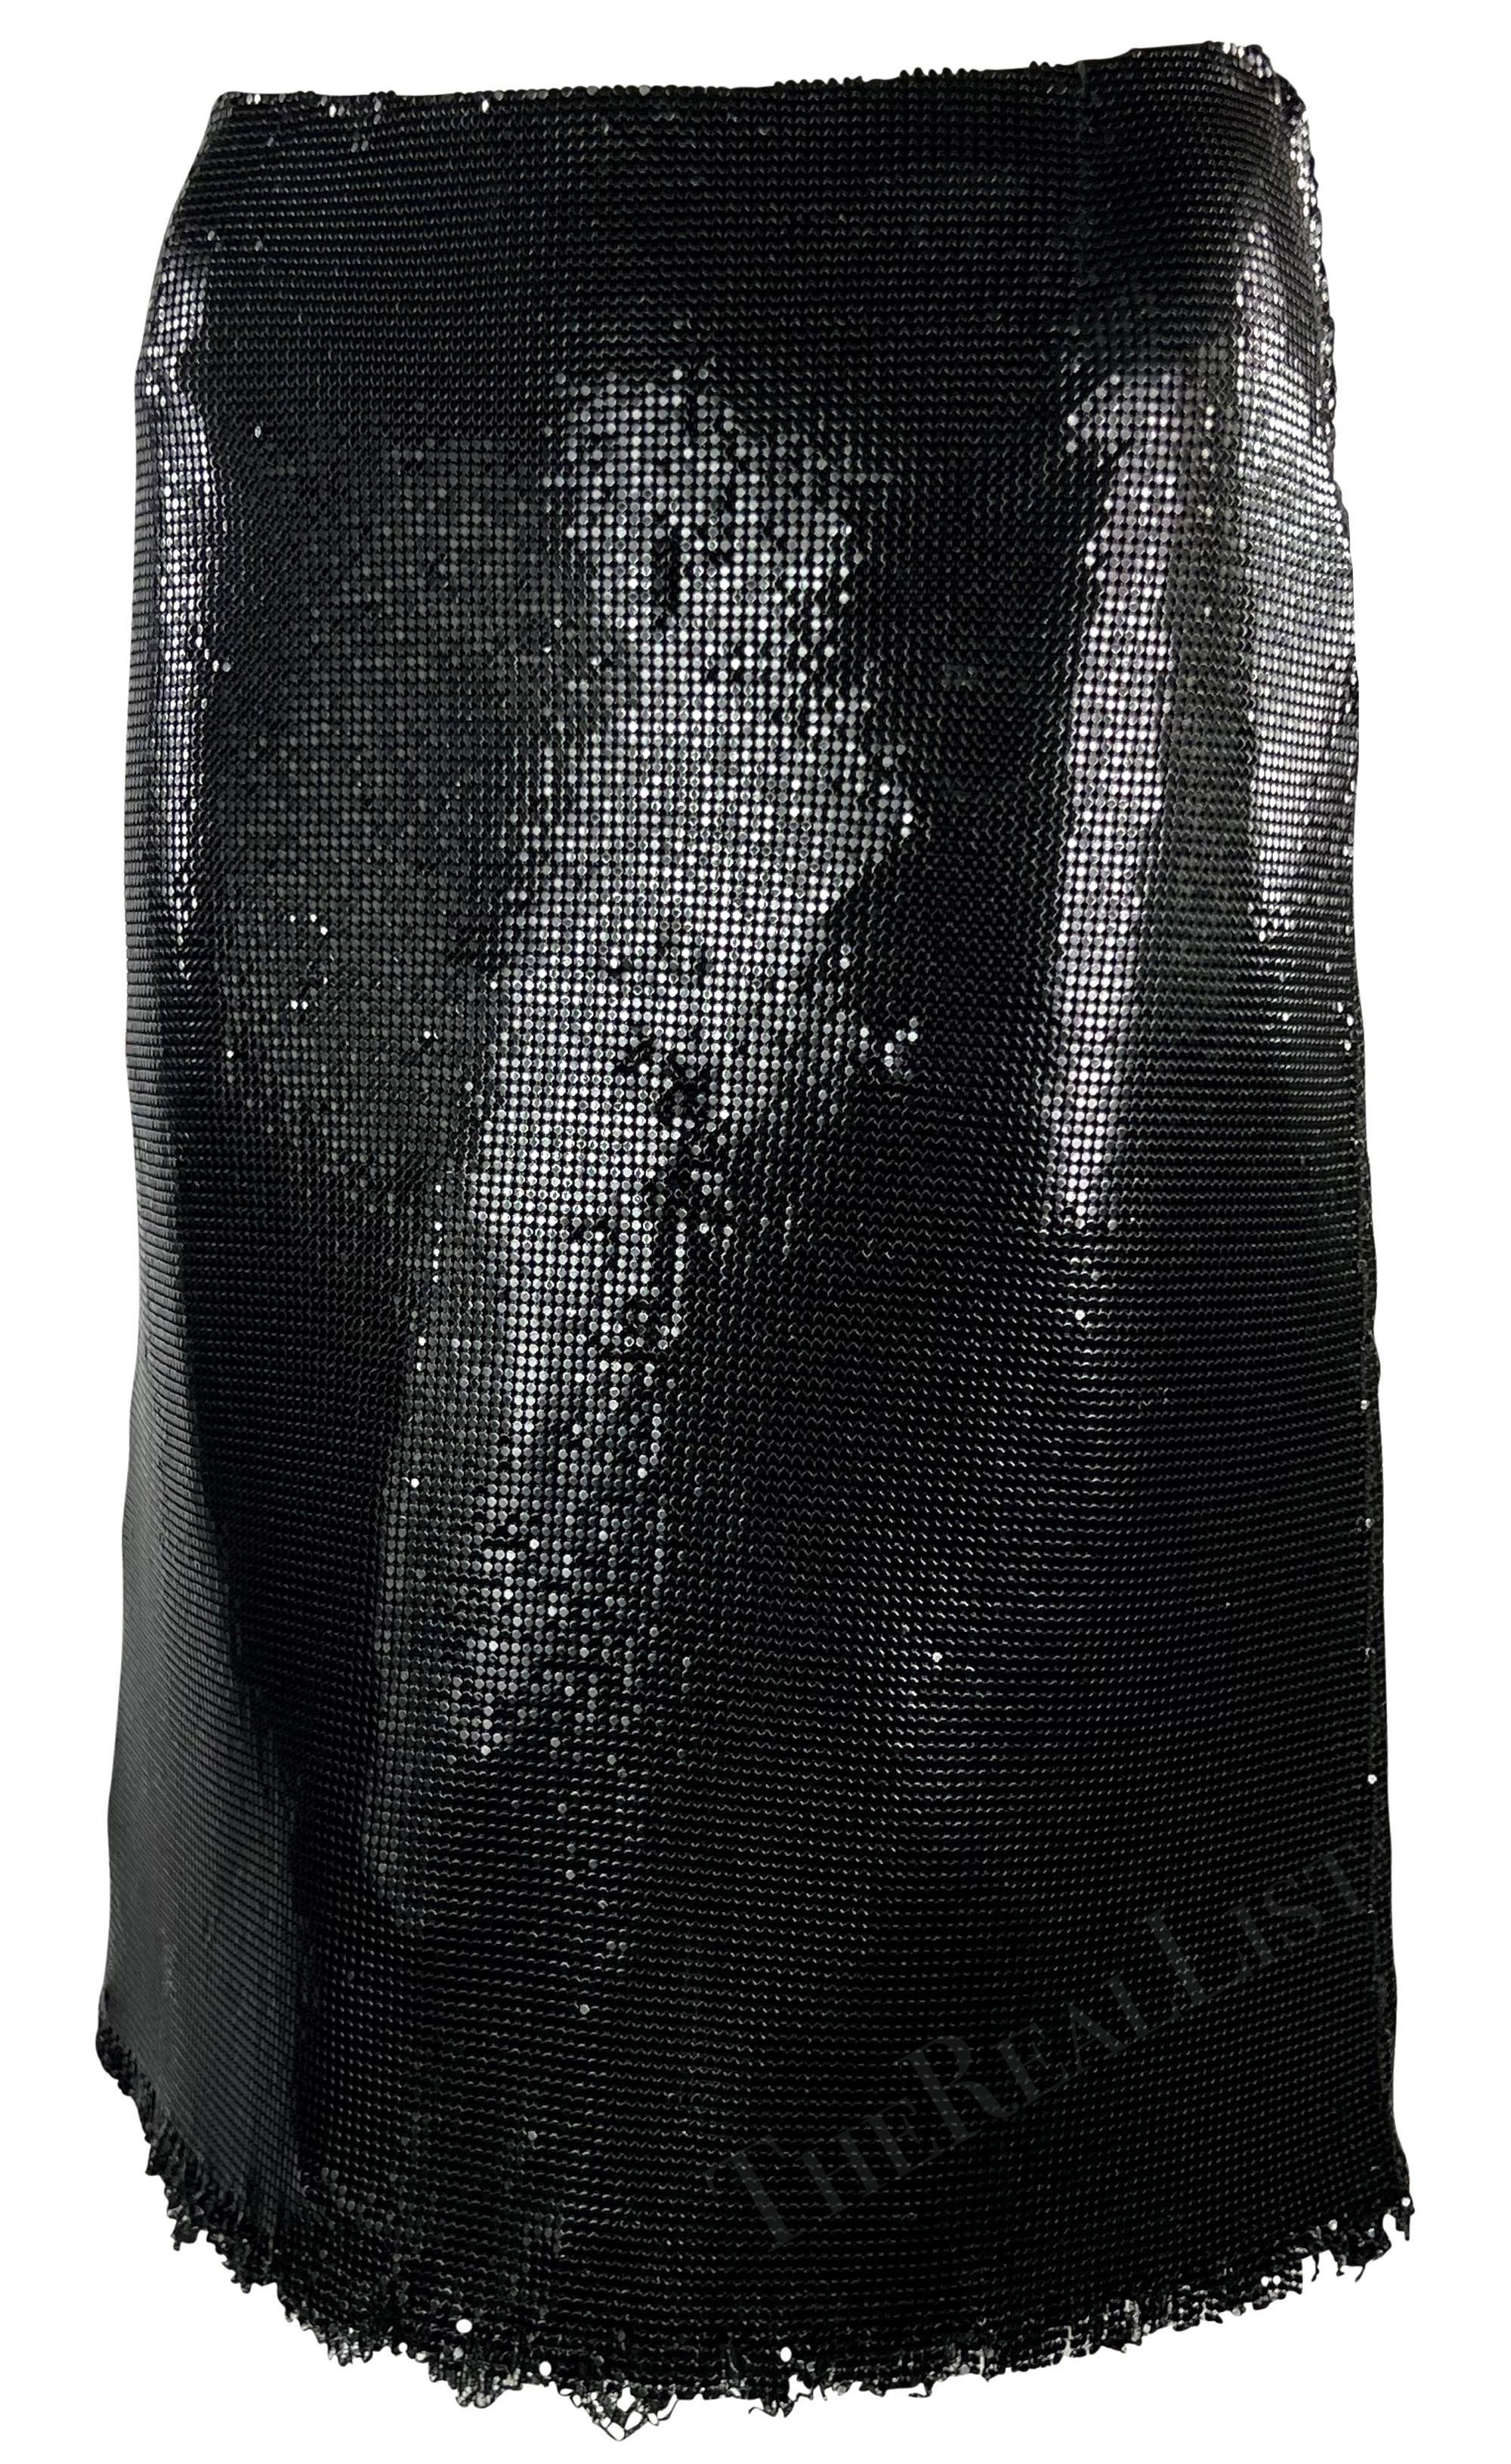 Dieser Rock von Gianni Versace wurde von Donatella Versace für die Herbst/Winter-Kollektion 1999 entworfen und besteht vollständig aus schwarz schimmerndem Oroton-Kettengeflecht. Dieser fabelhafte Rock in A-Linien-Silhouette ist mit einem leicht